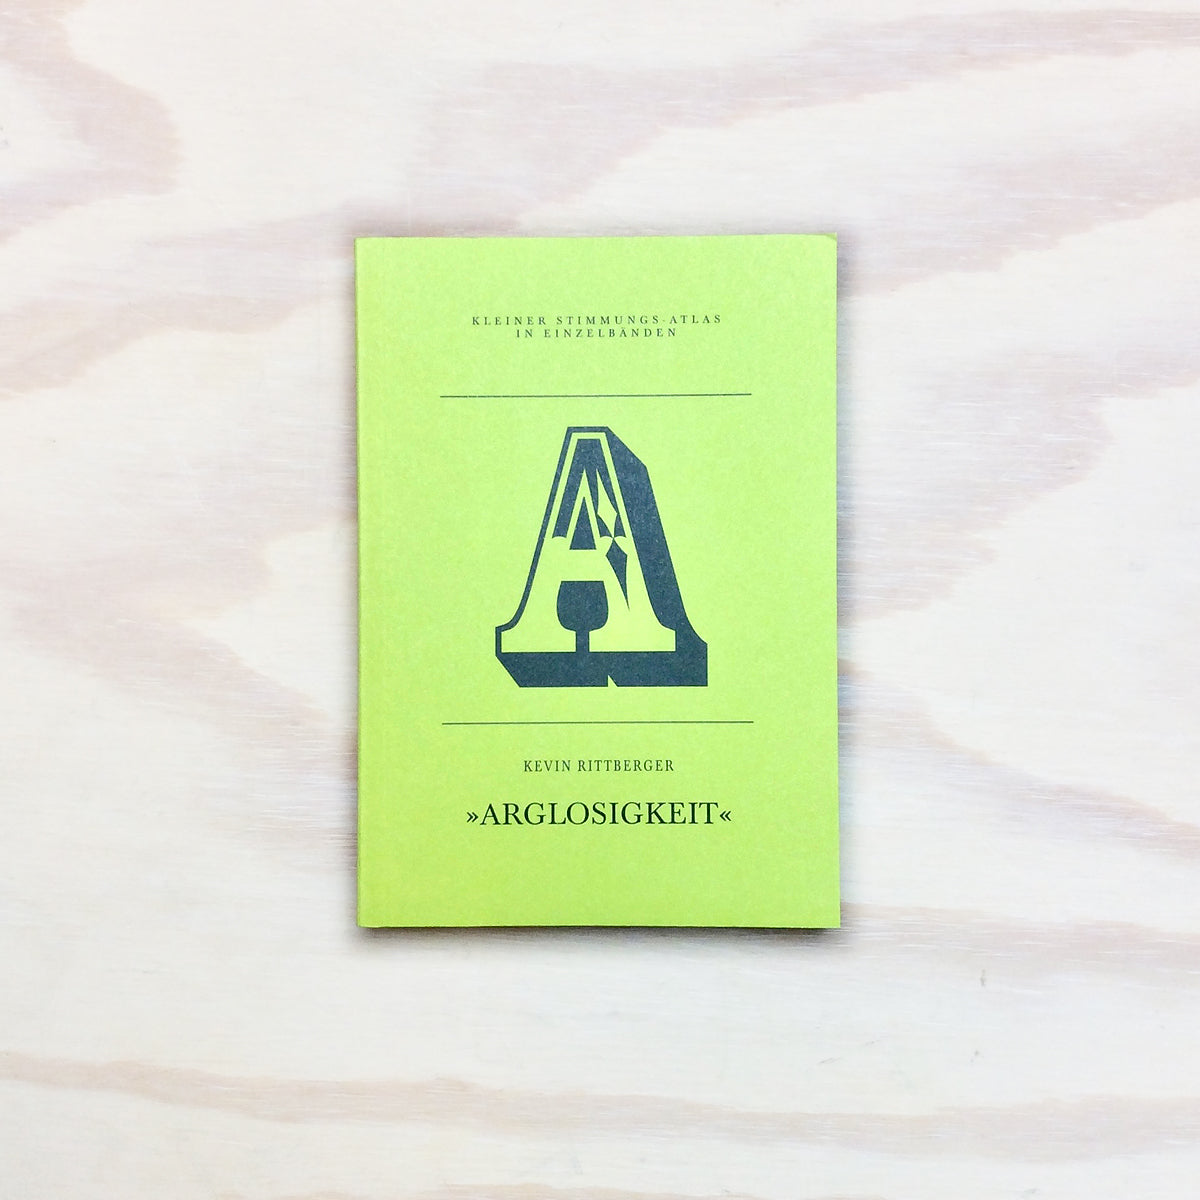 A – Arglosigkeit (Kleiner Stimmungs-Atlas in Einzelbänden)